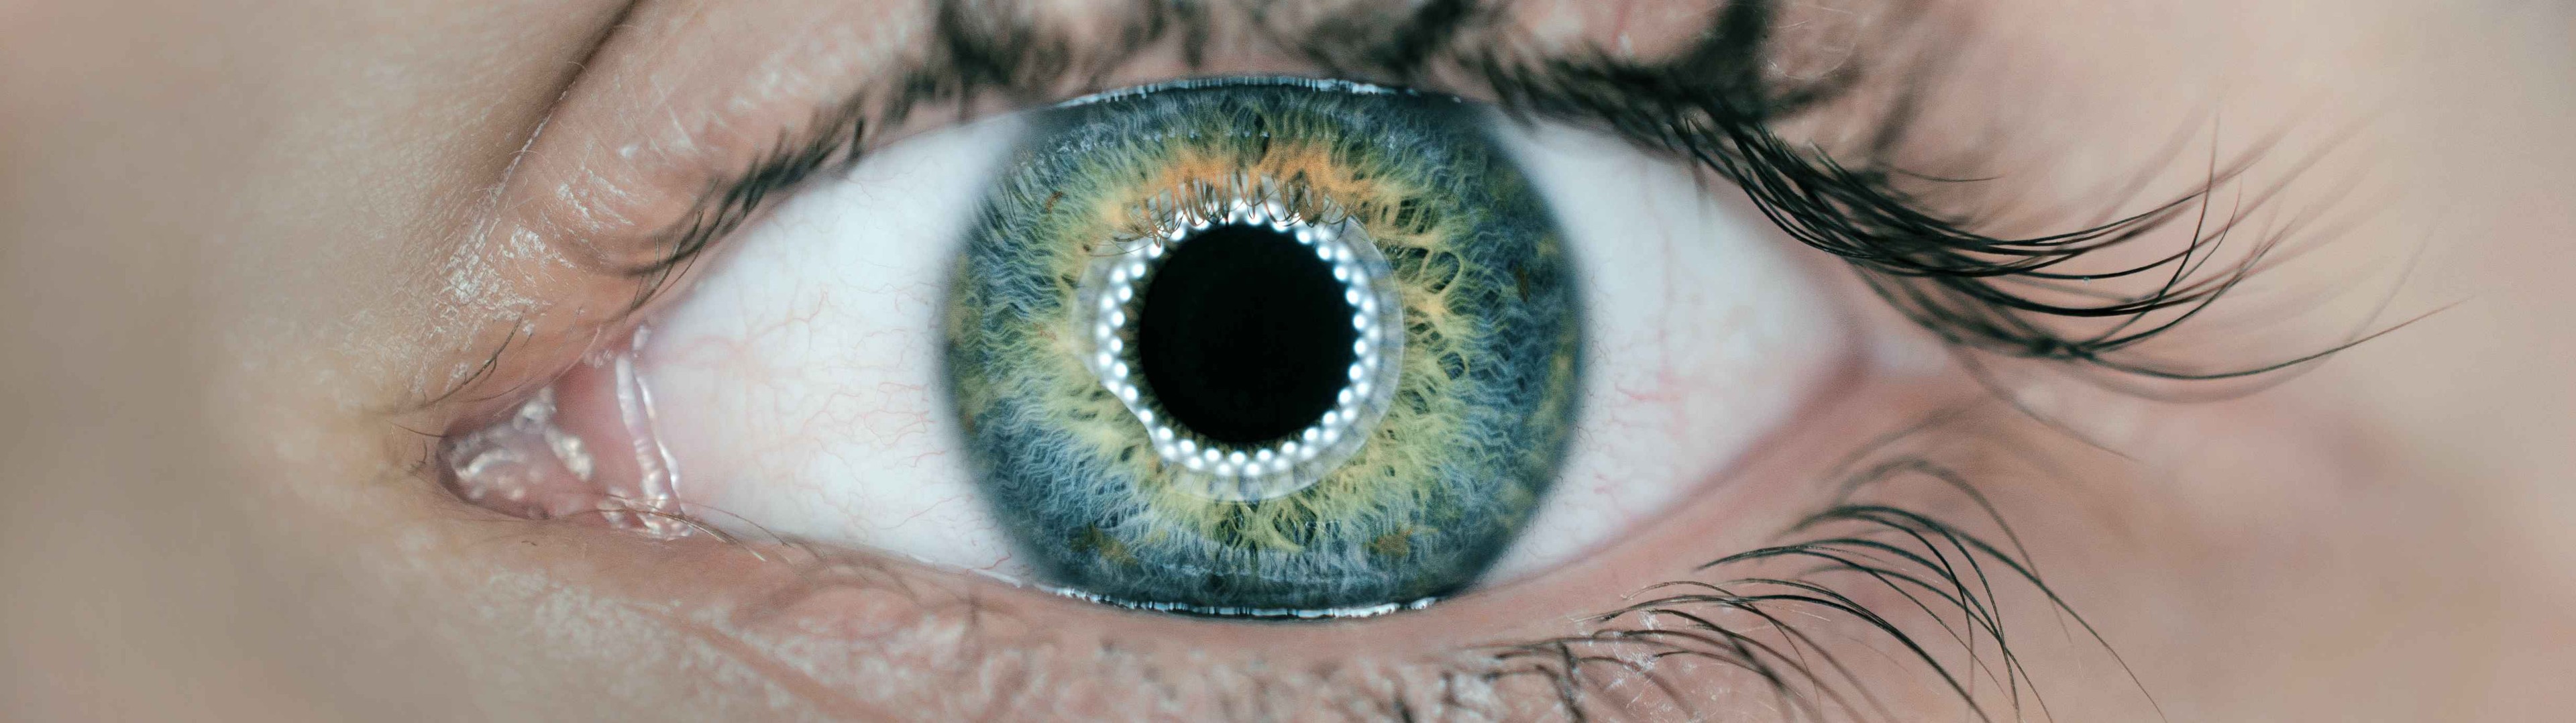 Diseñan unas lentes de contacto capaces de detectar enfermedades